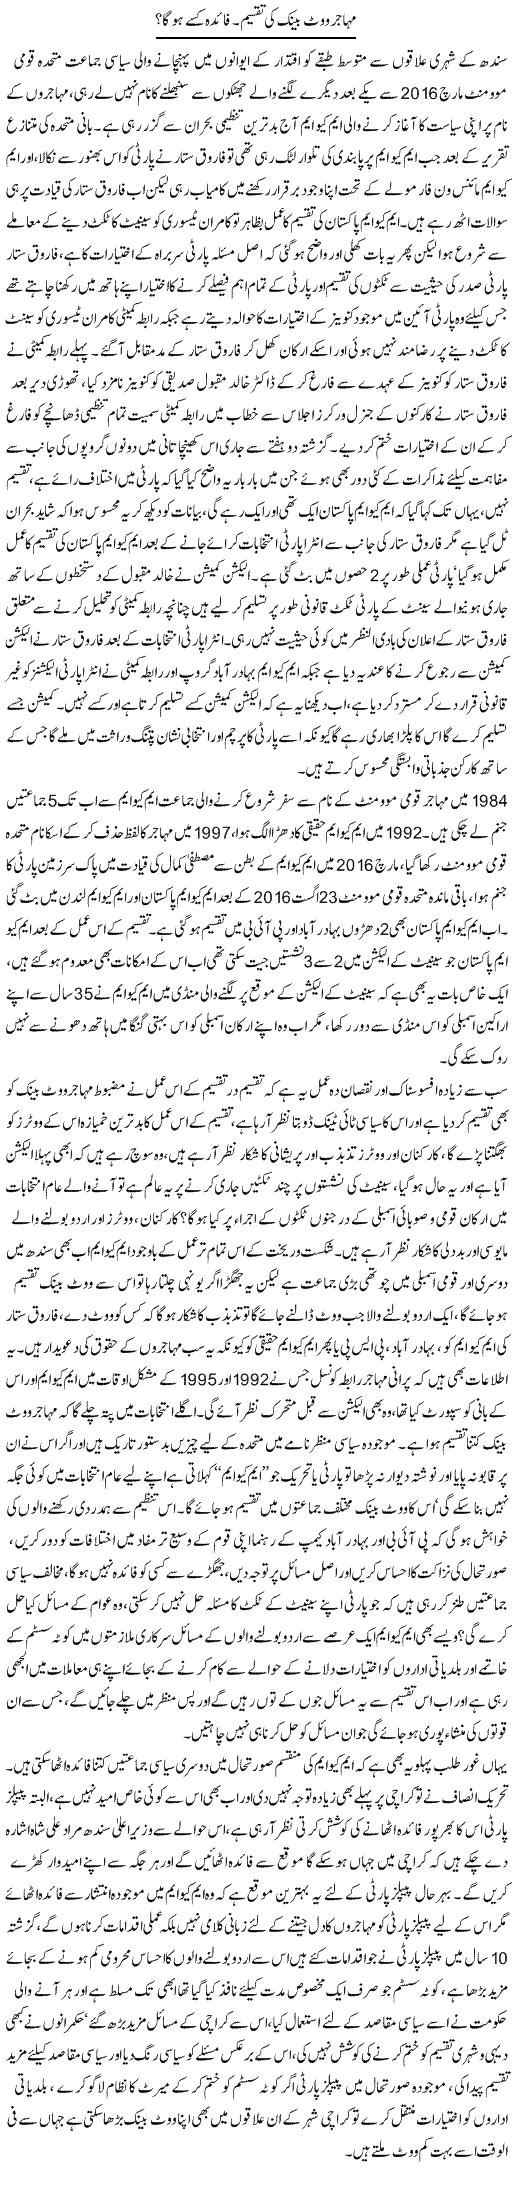 Mohajir Vote Bank Ki Taqseem. Faida Kisay Ho Ga? | Tahir Najmi | Daily Urdu Columns